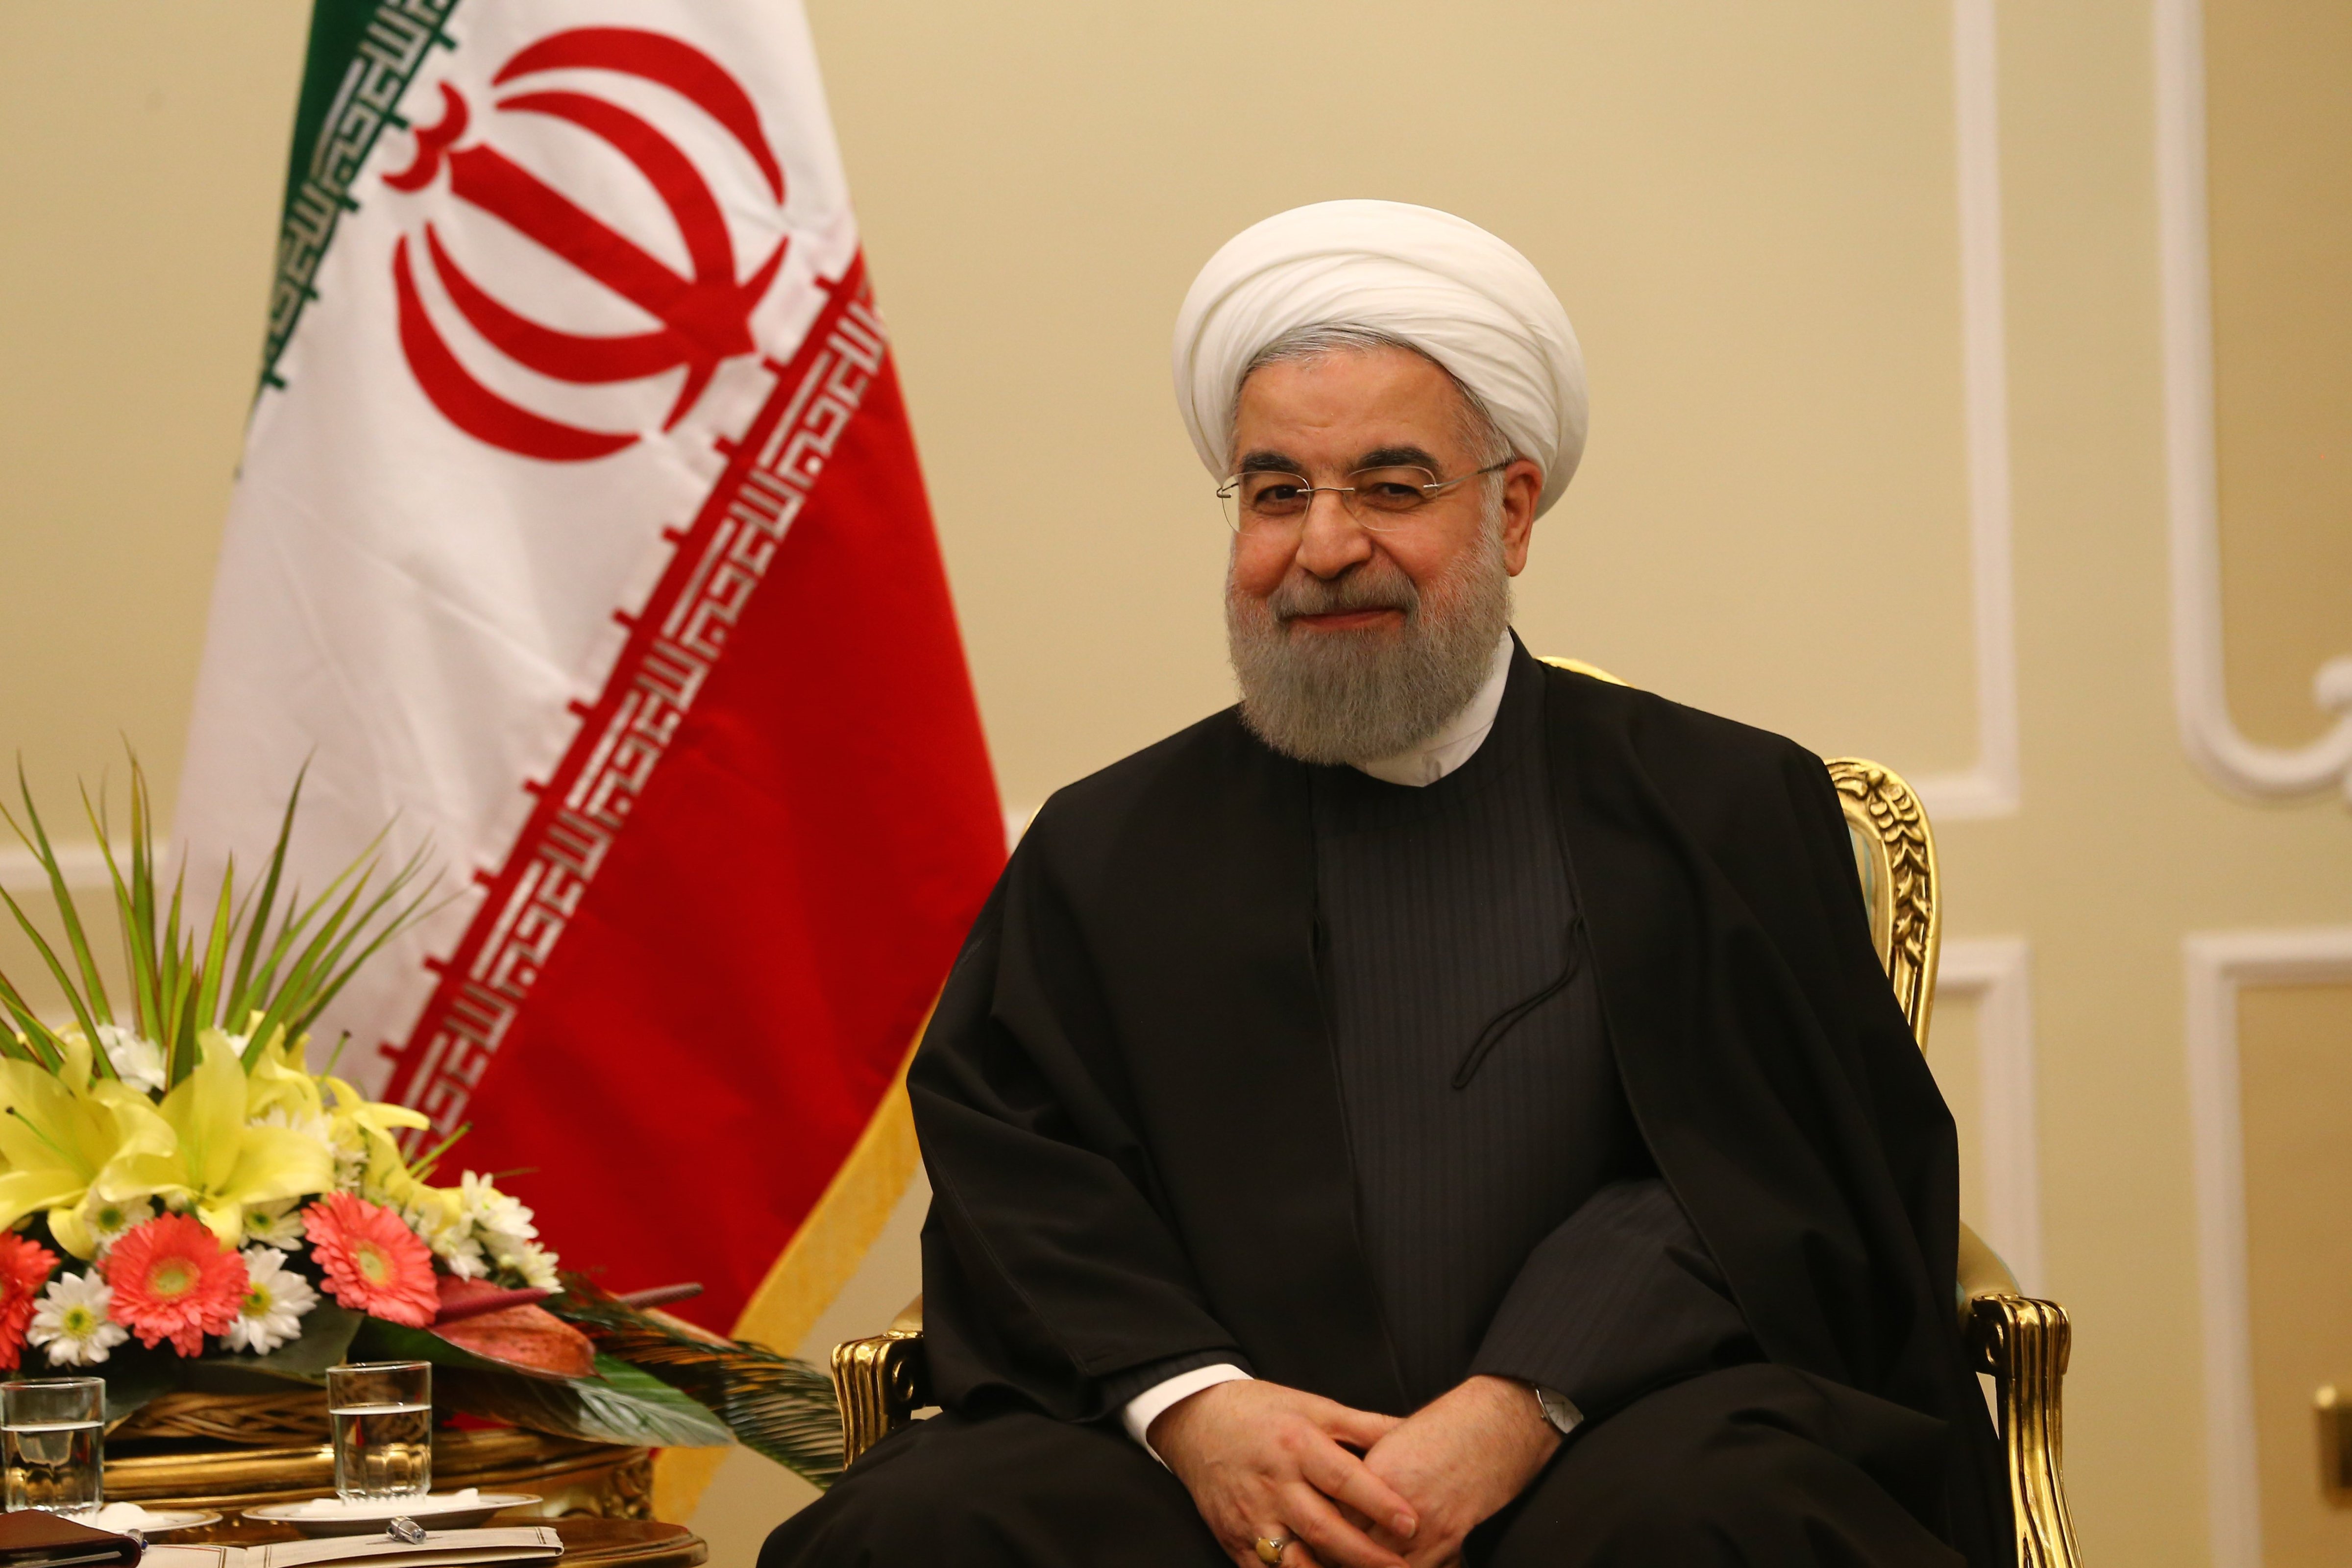 Davutoglu - Rouhani meeting in Tehran